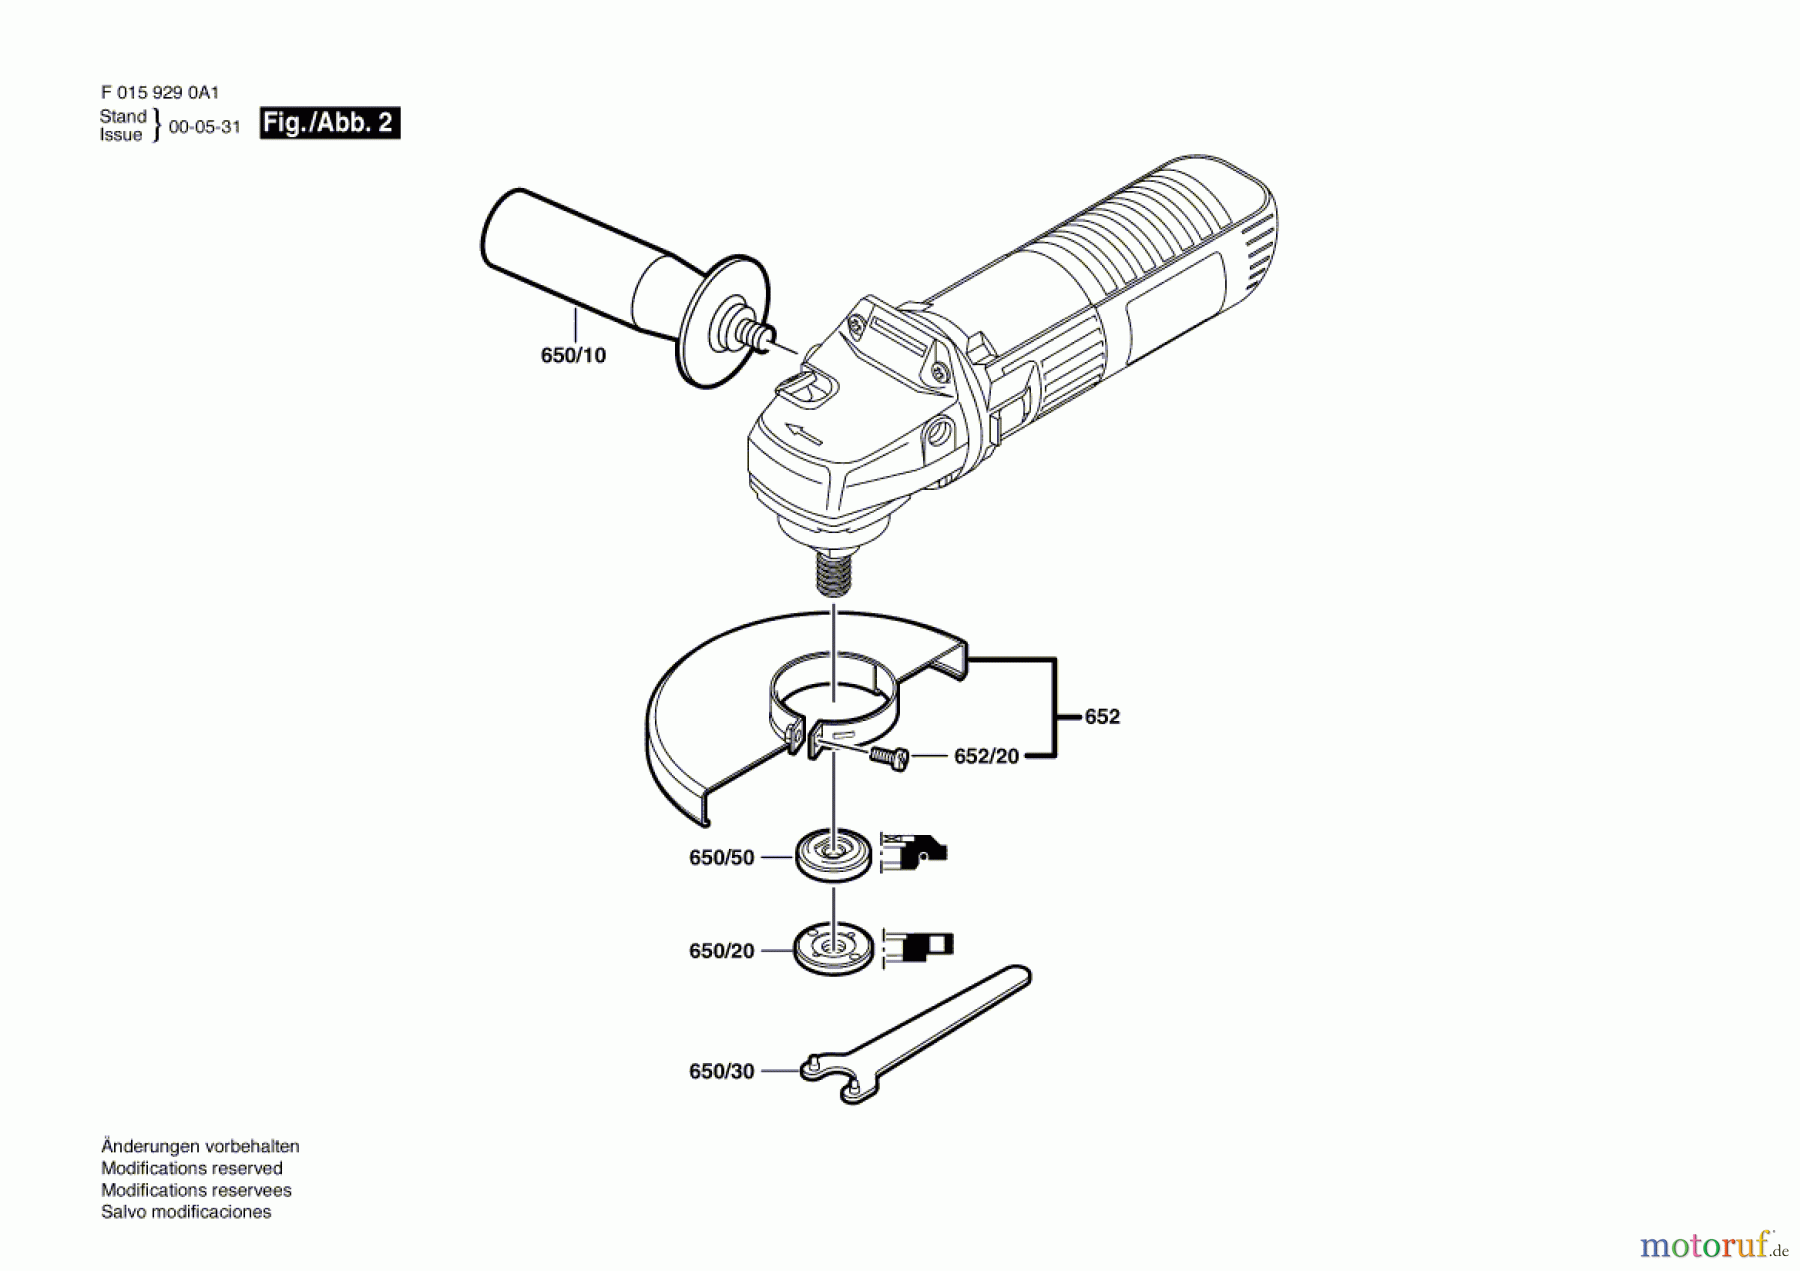  Bosch Werkzeug Winkelschleifer 9290 A1 Seite 2